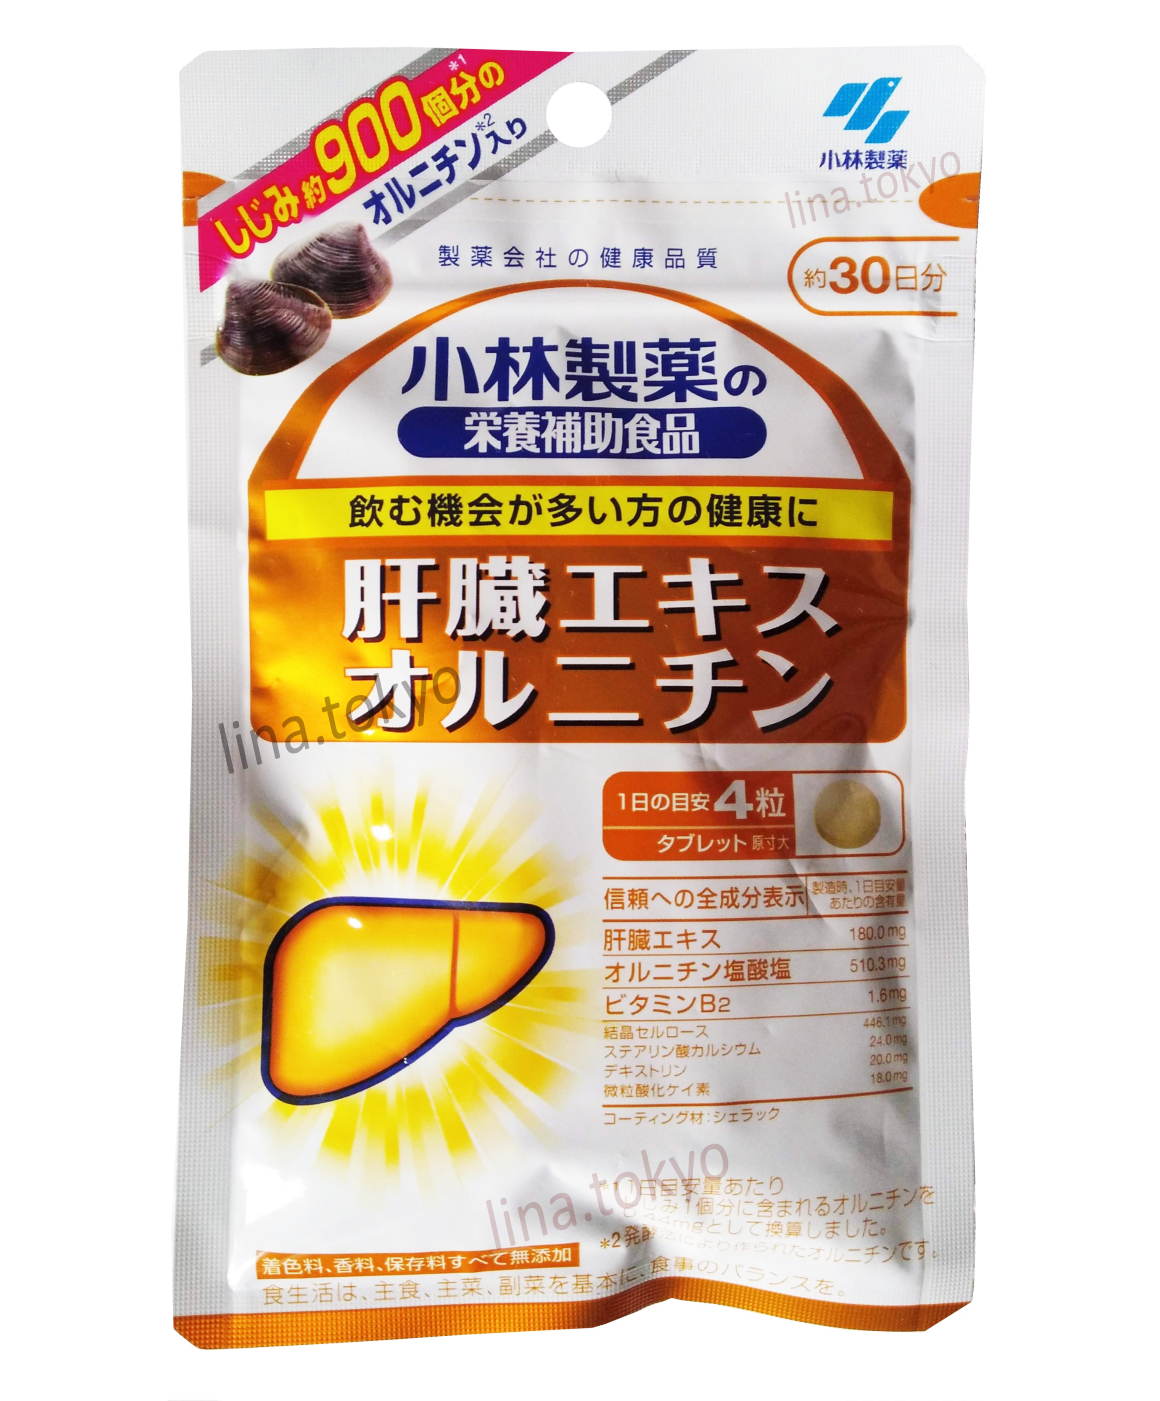 Viên uống bổ gan nhật bản Kobayashi 30 ngày hỗ trợ phục hồi chức năng gan, giải độc gan, hạ men gan (N300064) (Miễn phí giao hàng)